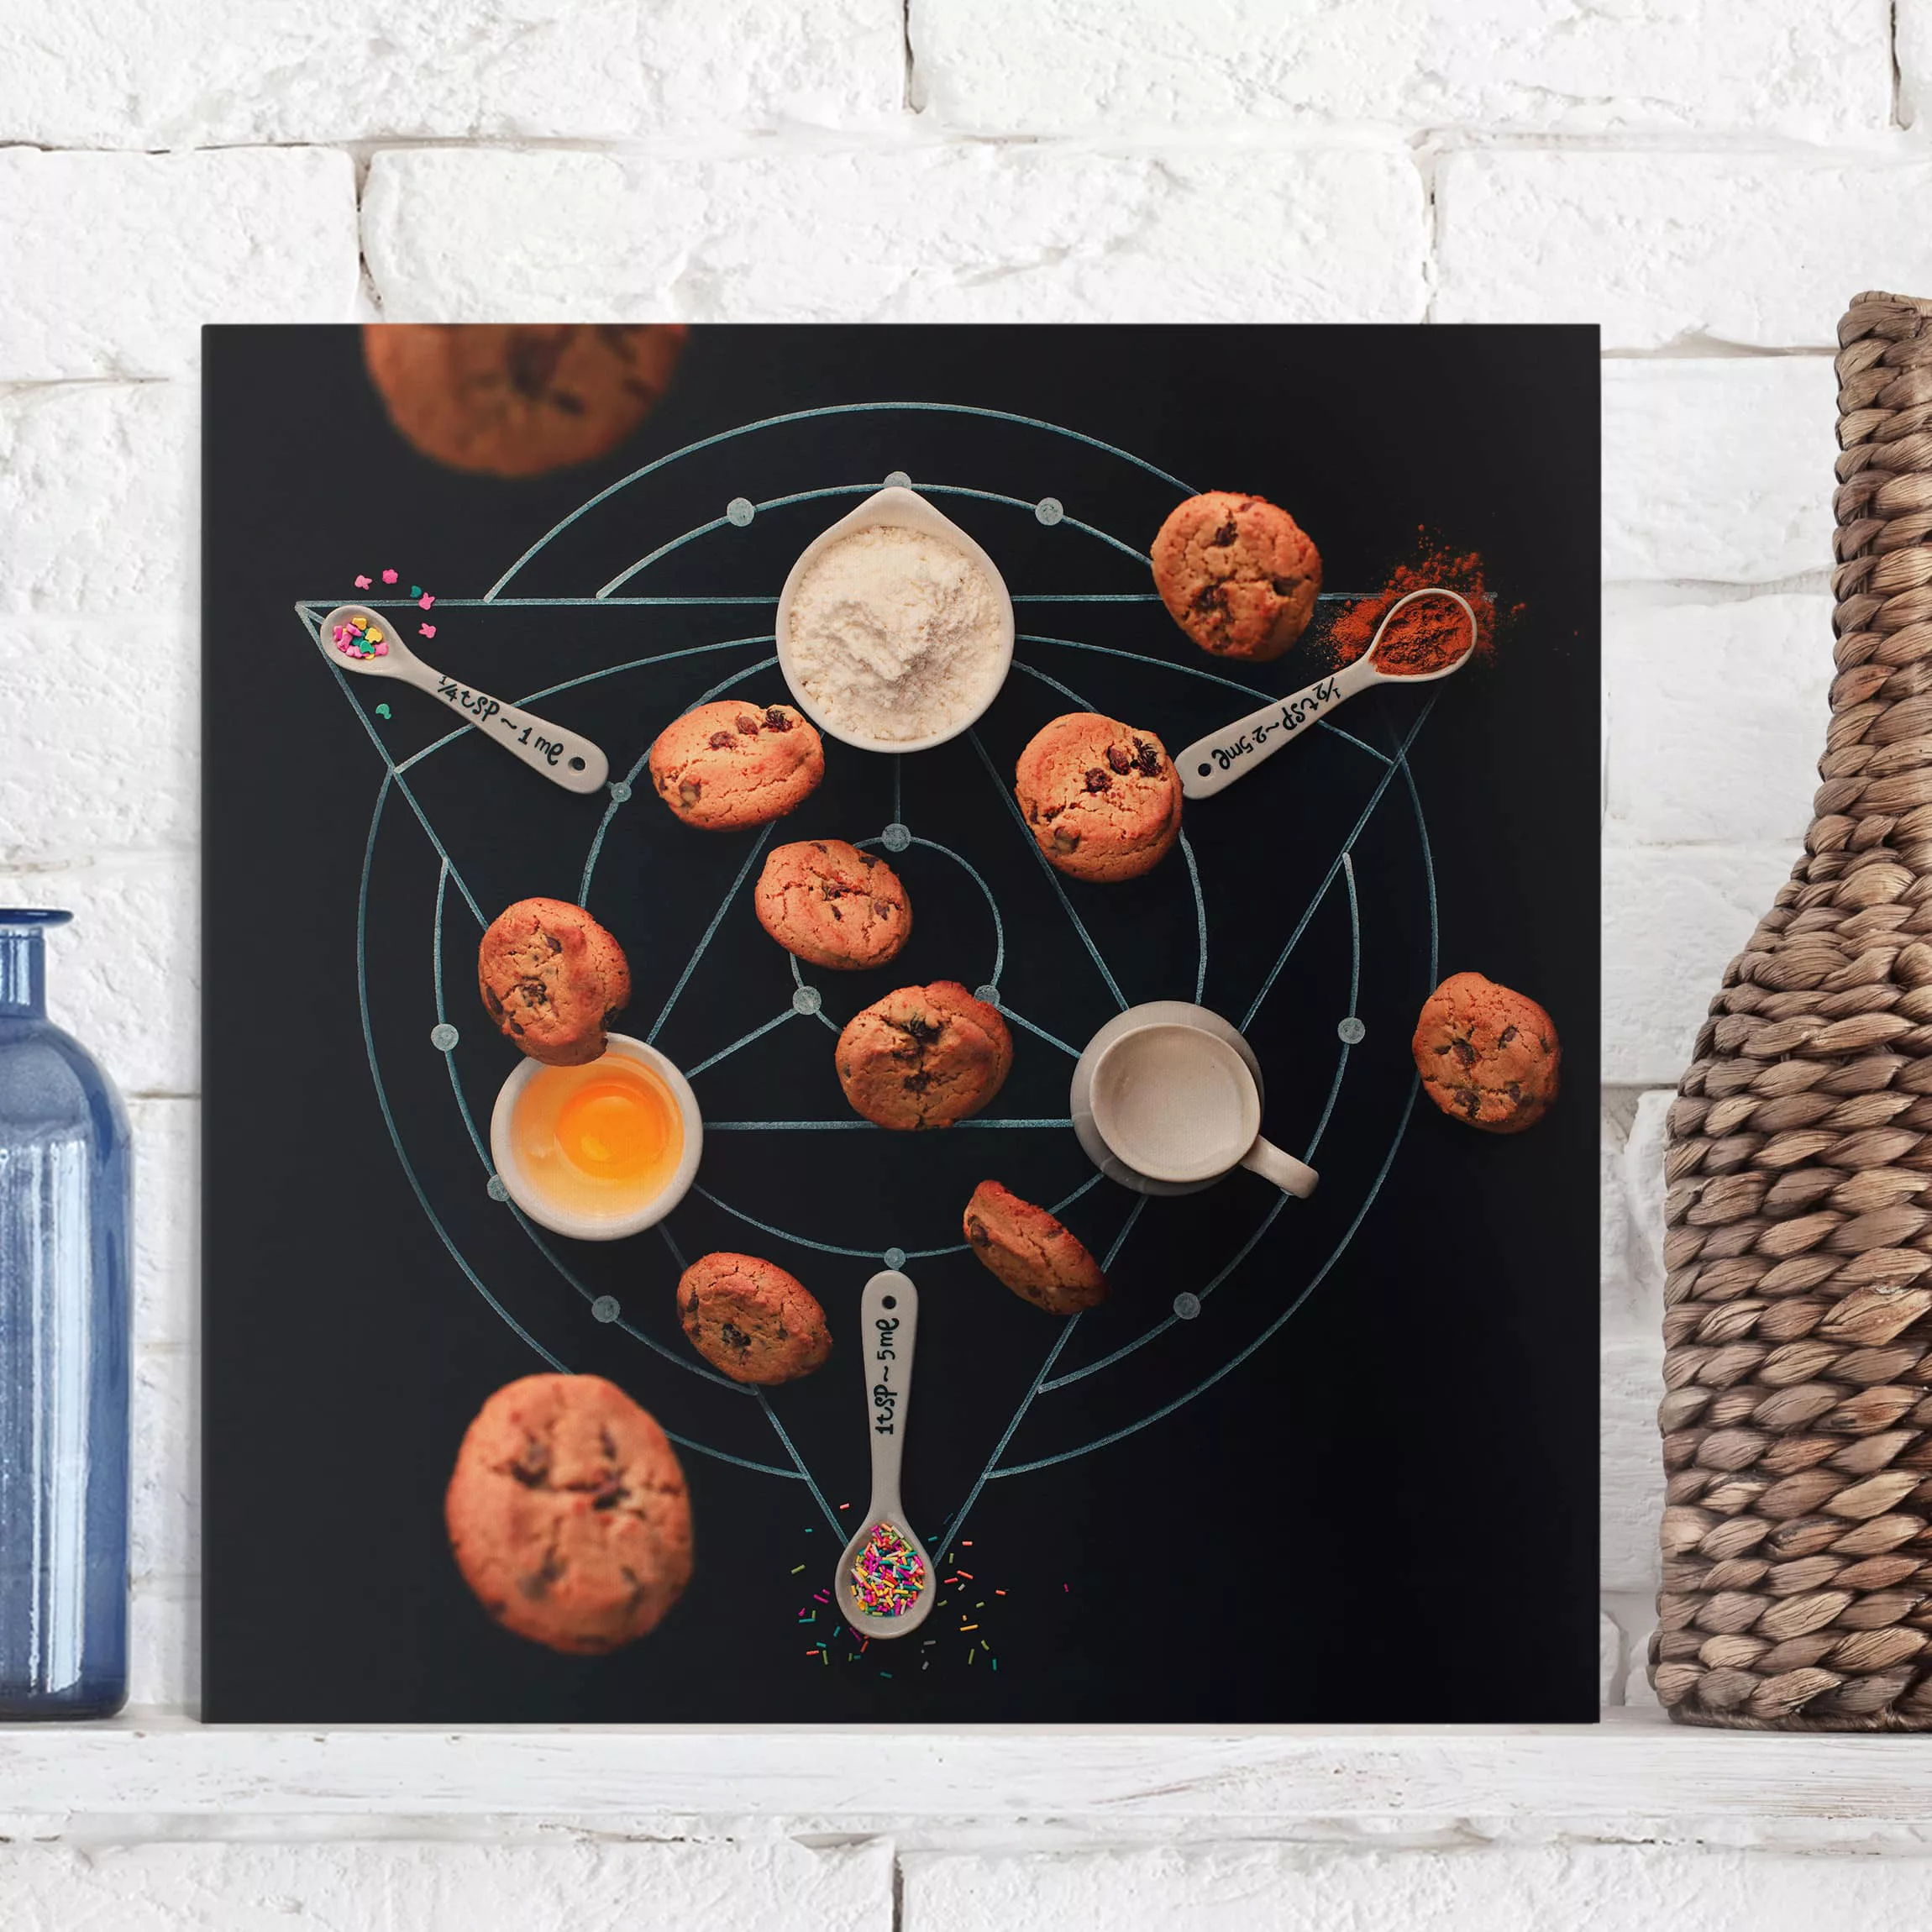 Leinwandbild Küche - Quadrat Alchemie des Backens günstig online kaufen